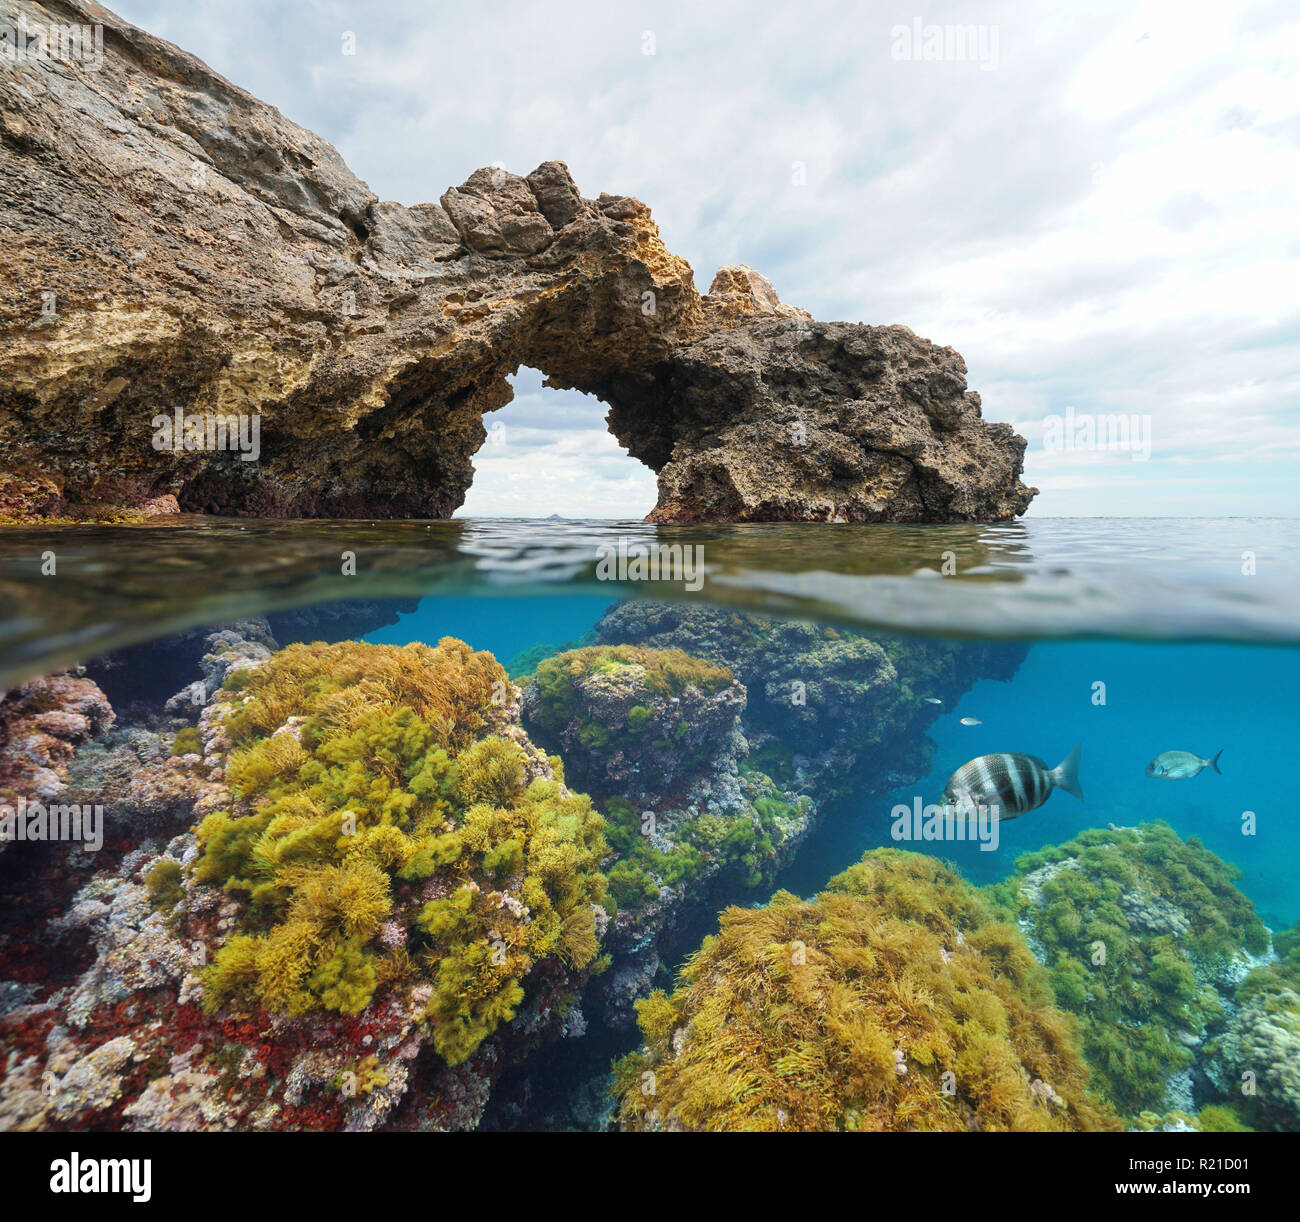 Felsformation Natural Arch mit Algen und Fisch unter Wasser, geteilte Ansicht Hälfte oberhalb und unterhalb der Wasseroberfläche, Mittelmeer, Cabo de Palos, Spanien Stockfoto